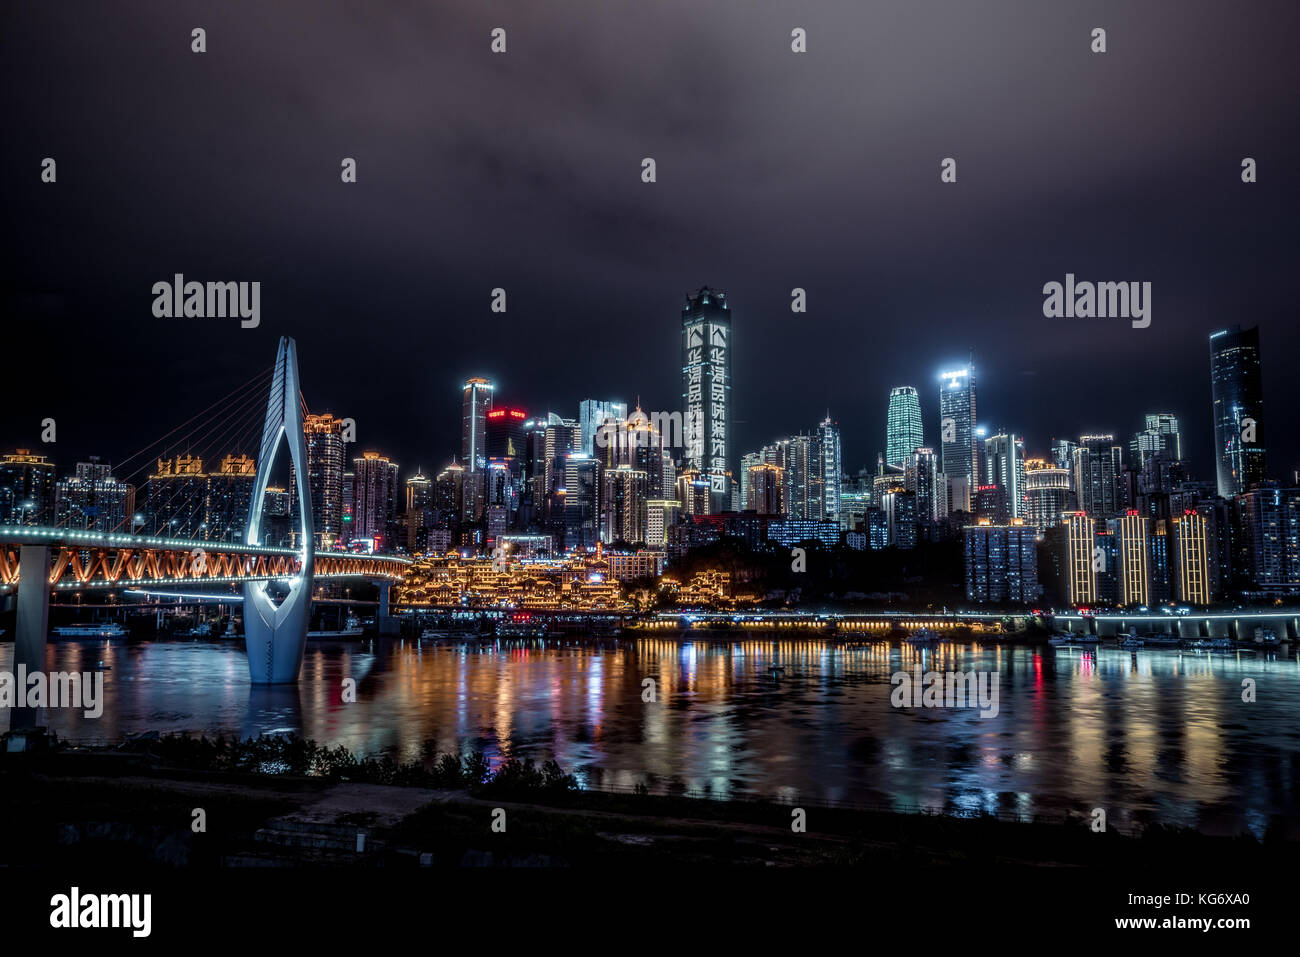 Skyline of Chongqing at night, China Stock Photo